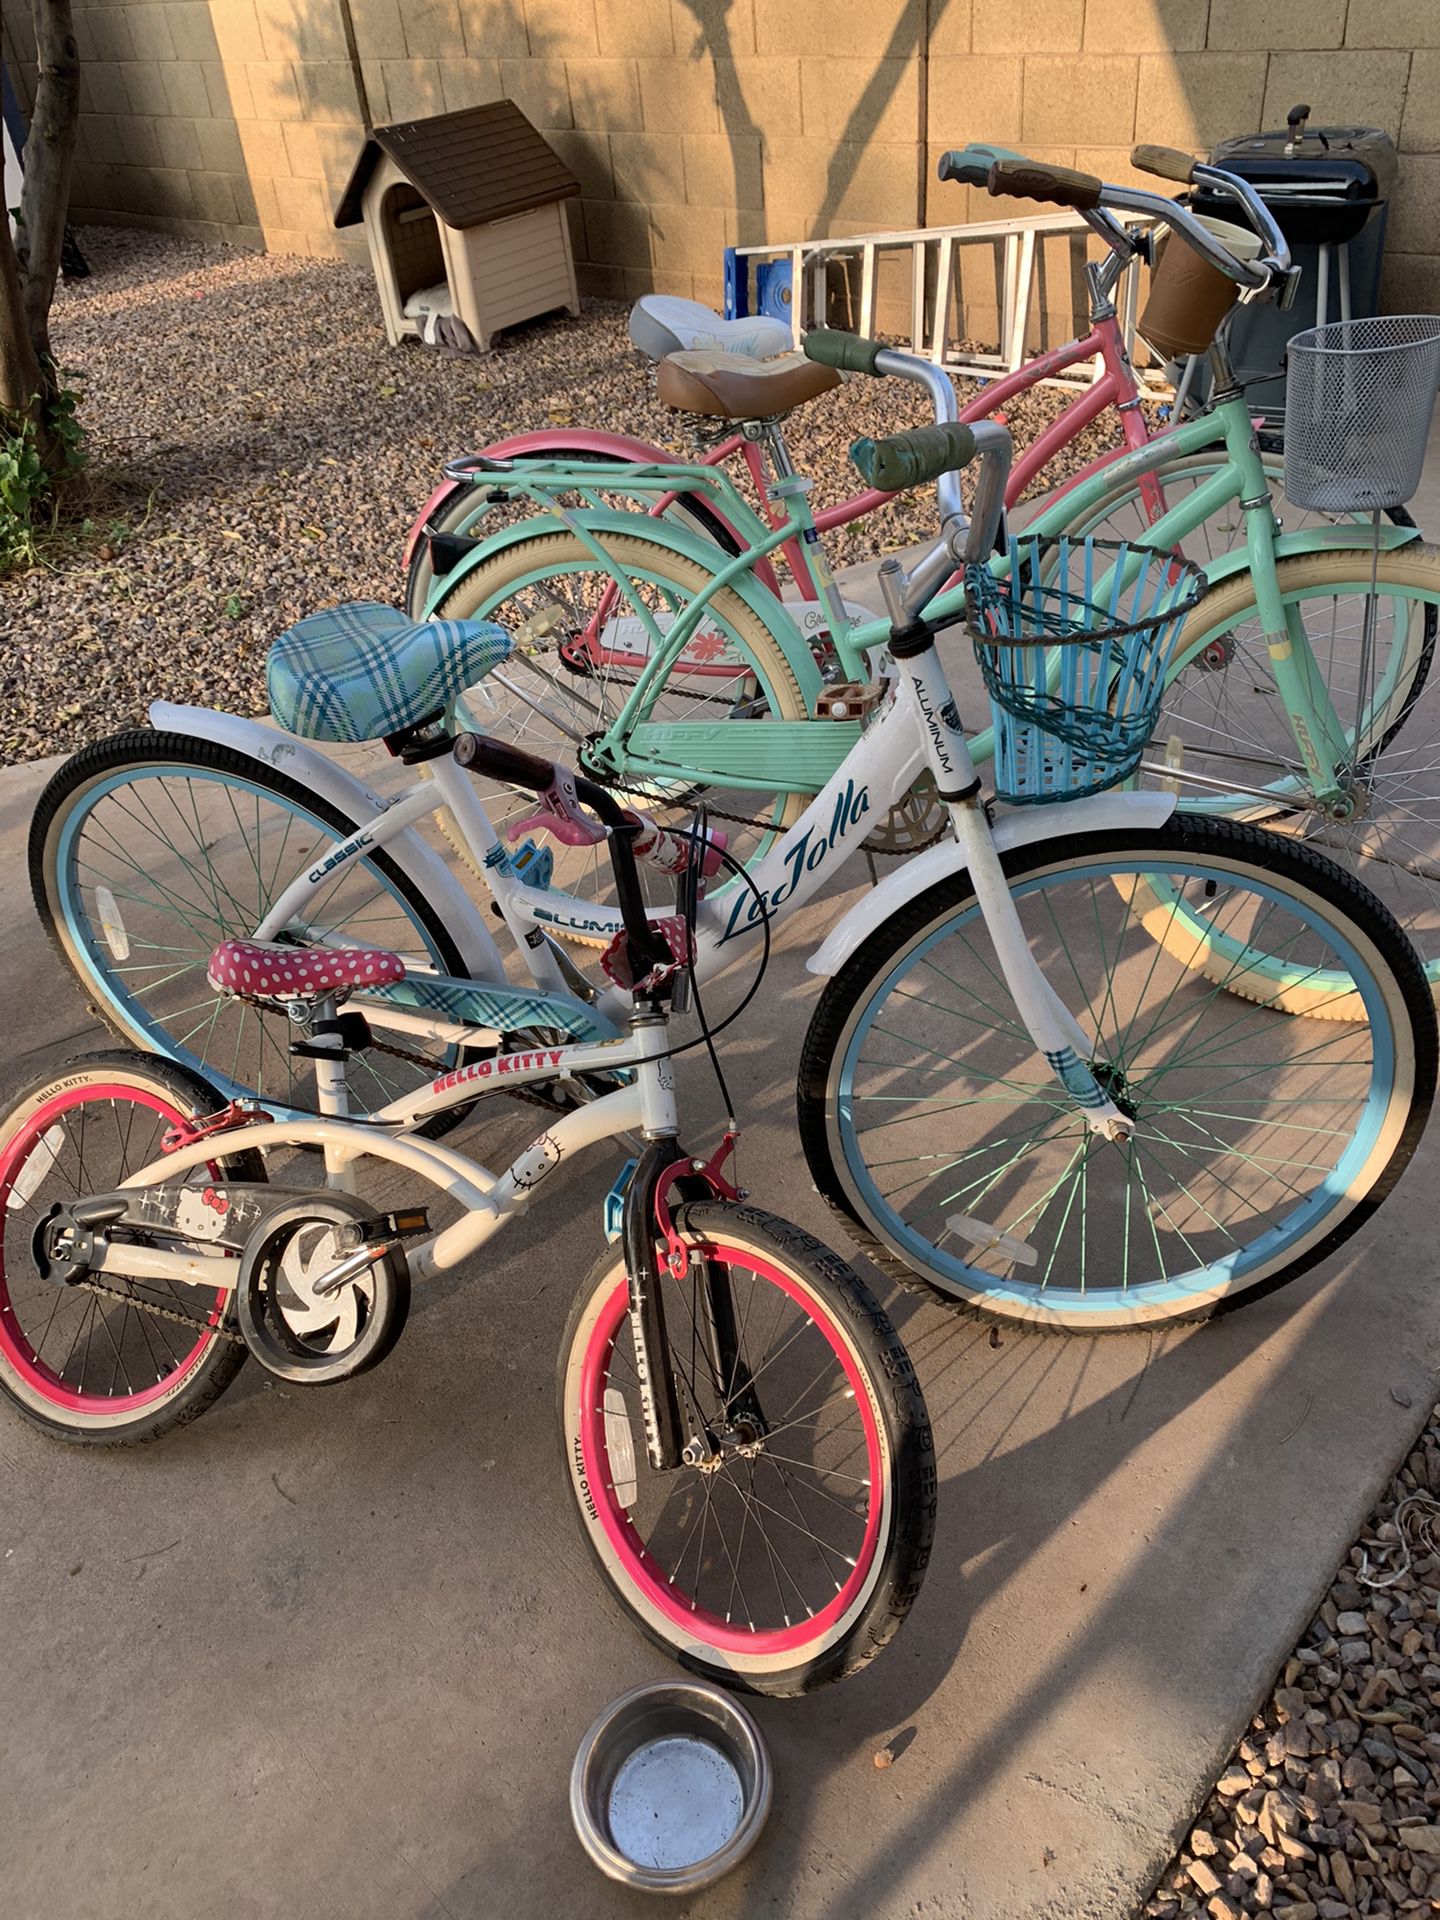 Bikes of various sizes